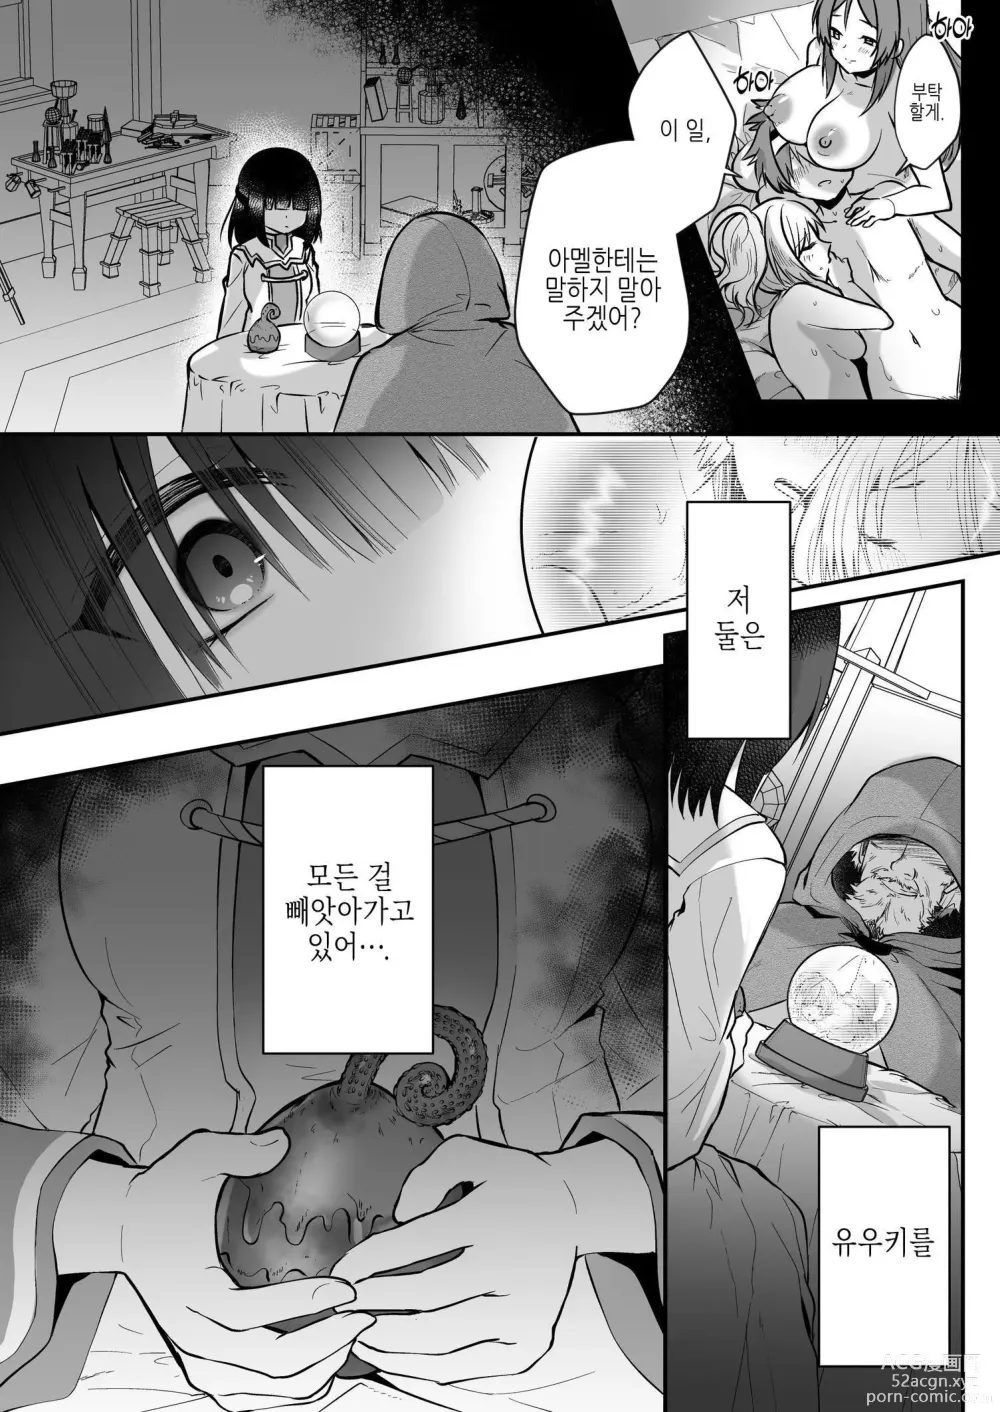 Page 6 of doujinshi Yami Ochi Sister no Marunomi Kairaku Osen ~NTR Shi ni kuru Yatsu Zenin Marunomi Sureba Watashi no Kachida yo ne~